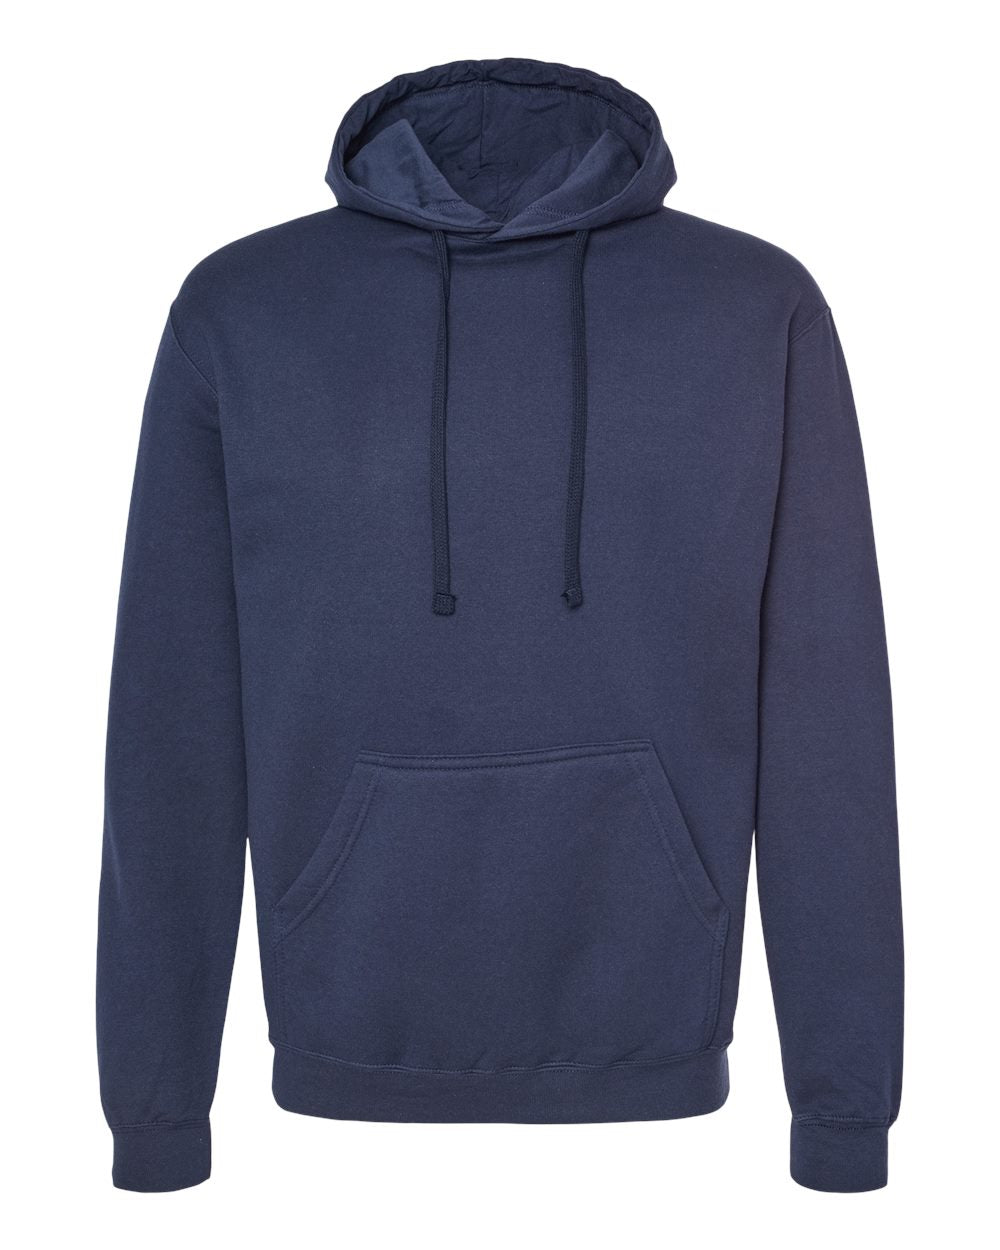 Tultex - Unisex Fleece Hooded Sweatshirt - 320